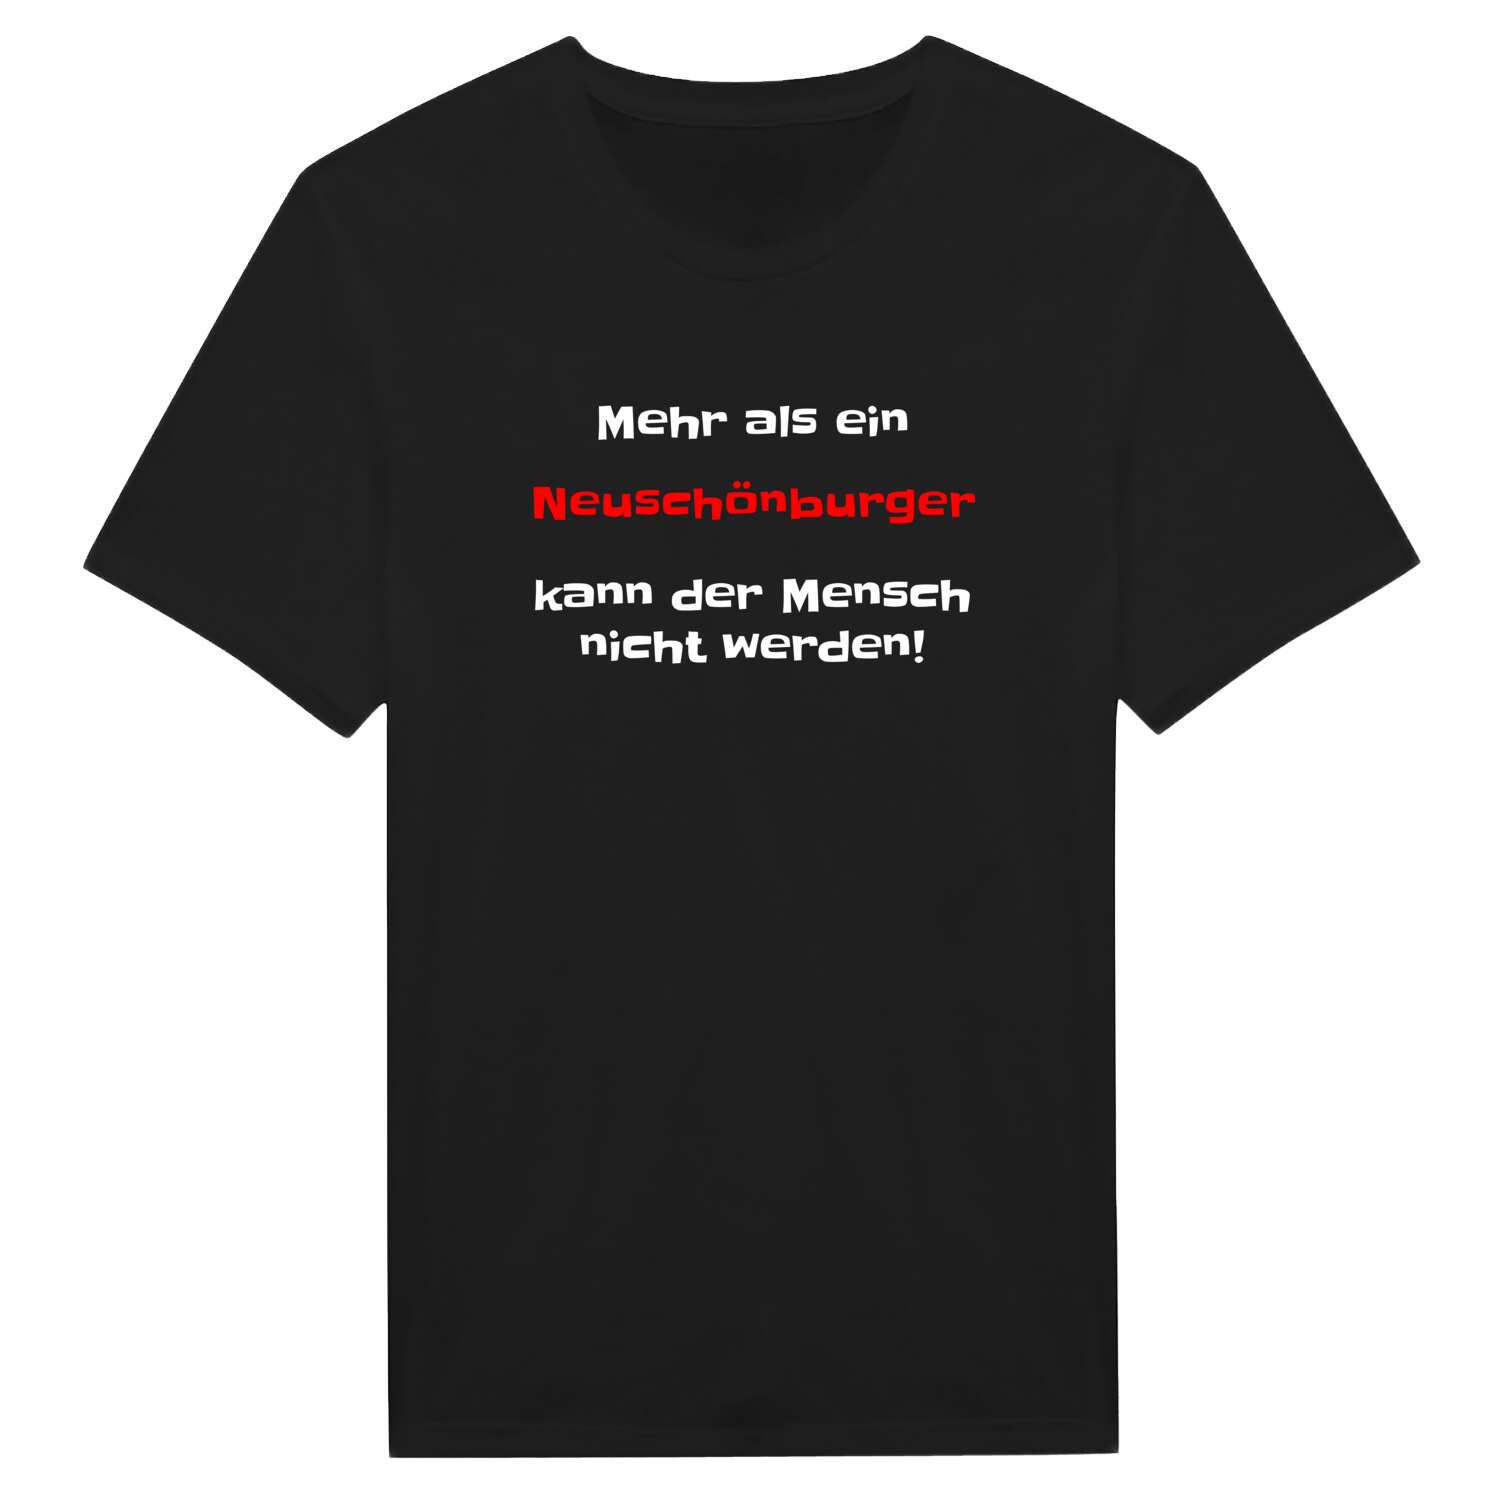 Neuschönburg T-Shirt »Mehr als ein«